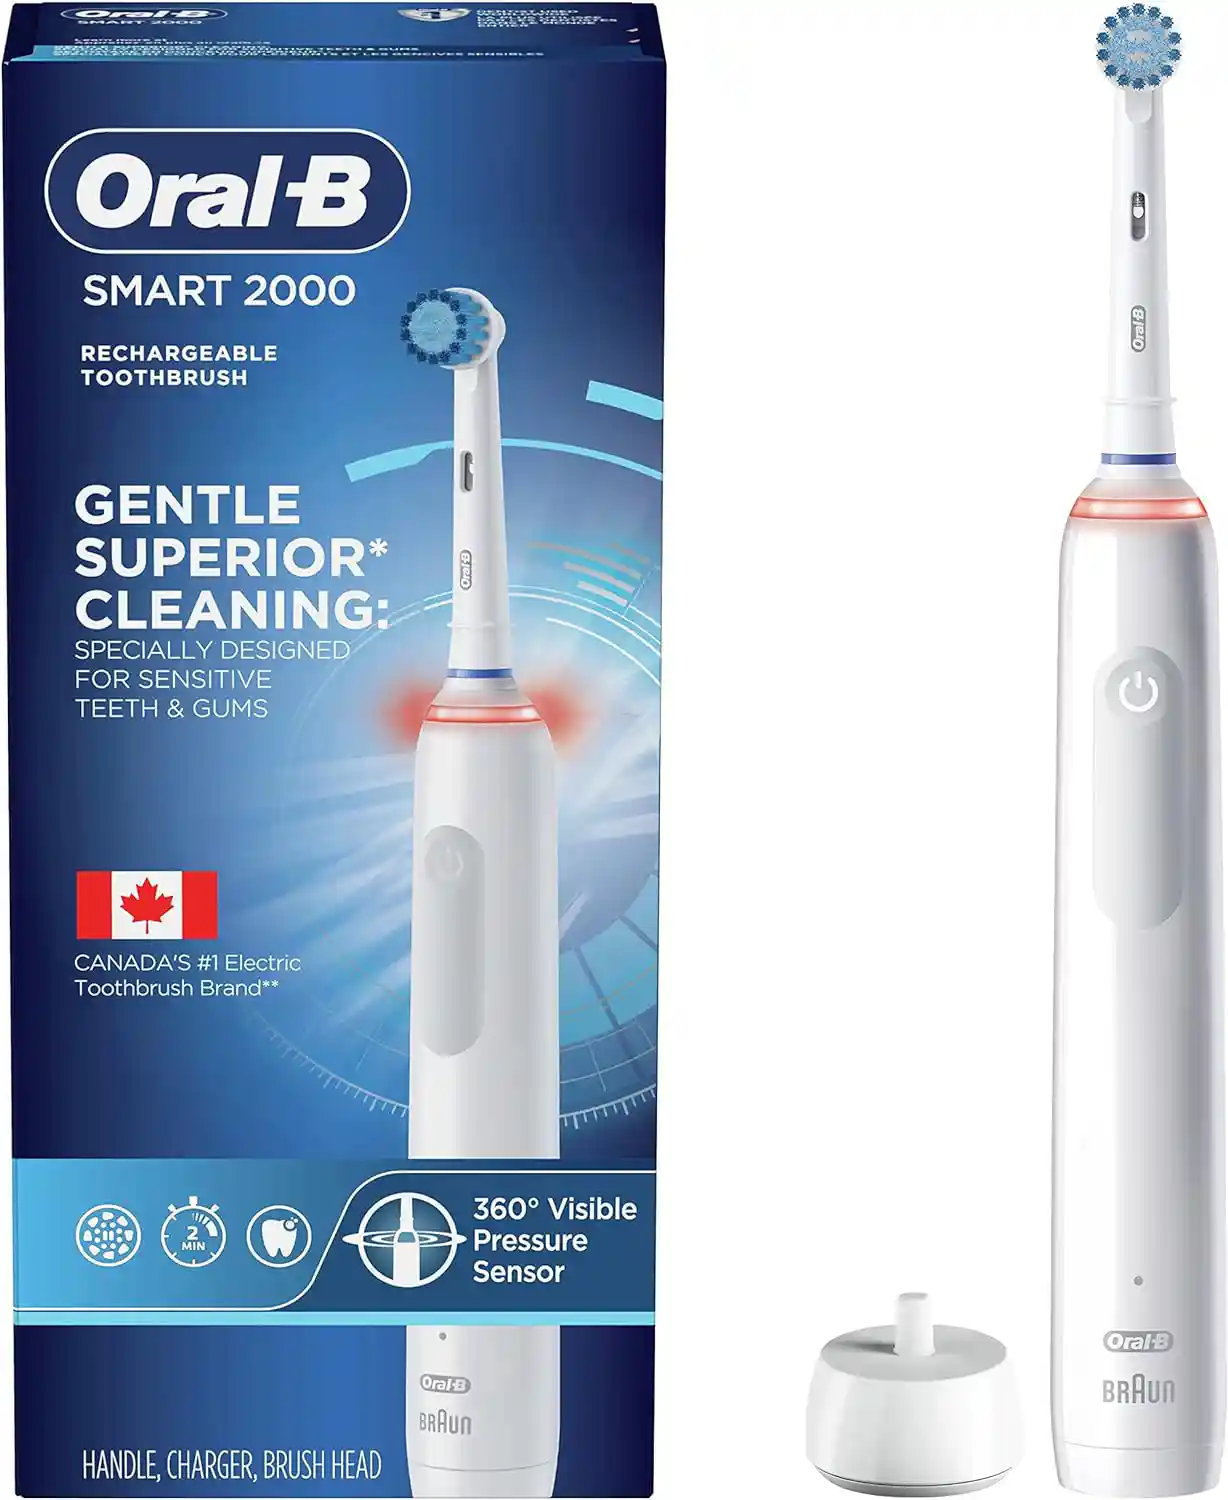 Meilleure brosse à dents électrique rapport qualité/prix : Oral-B Smart 2000